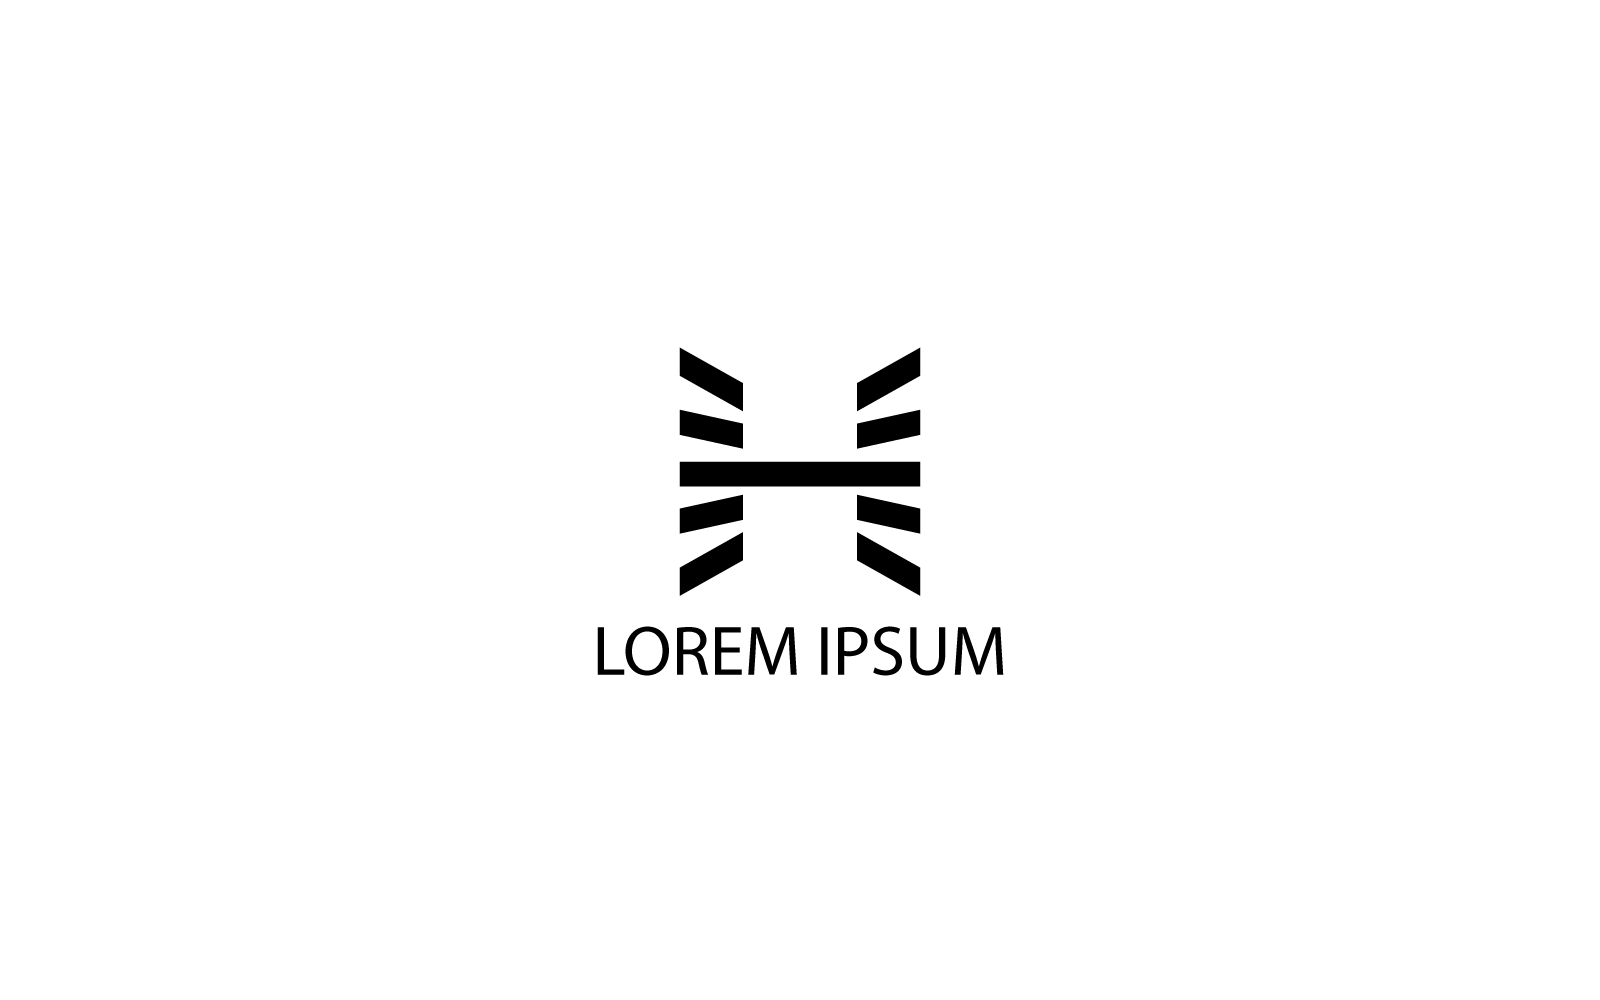 Création de logo H minimal et unique moderne